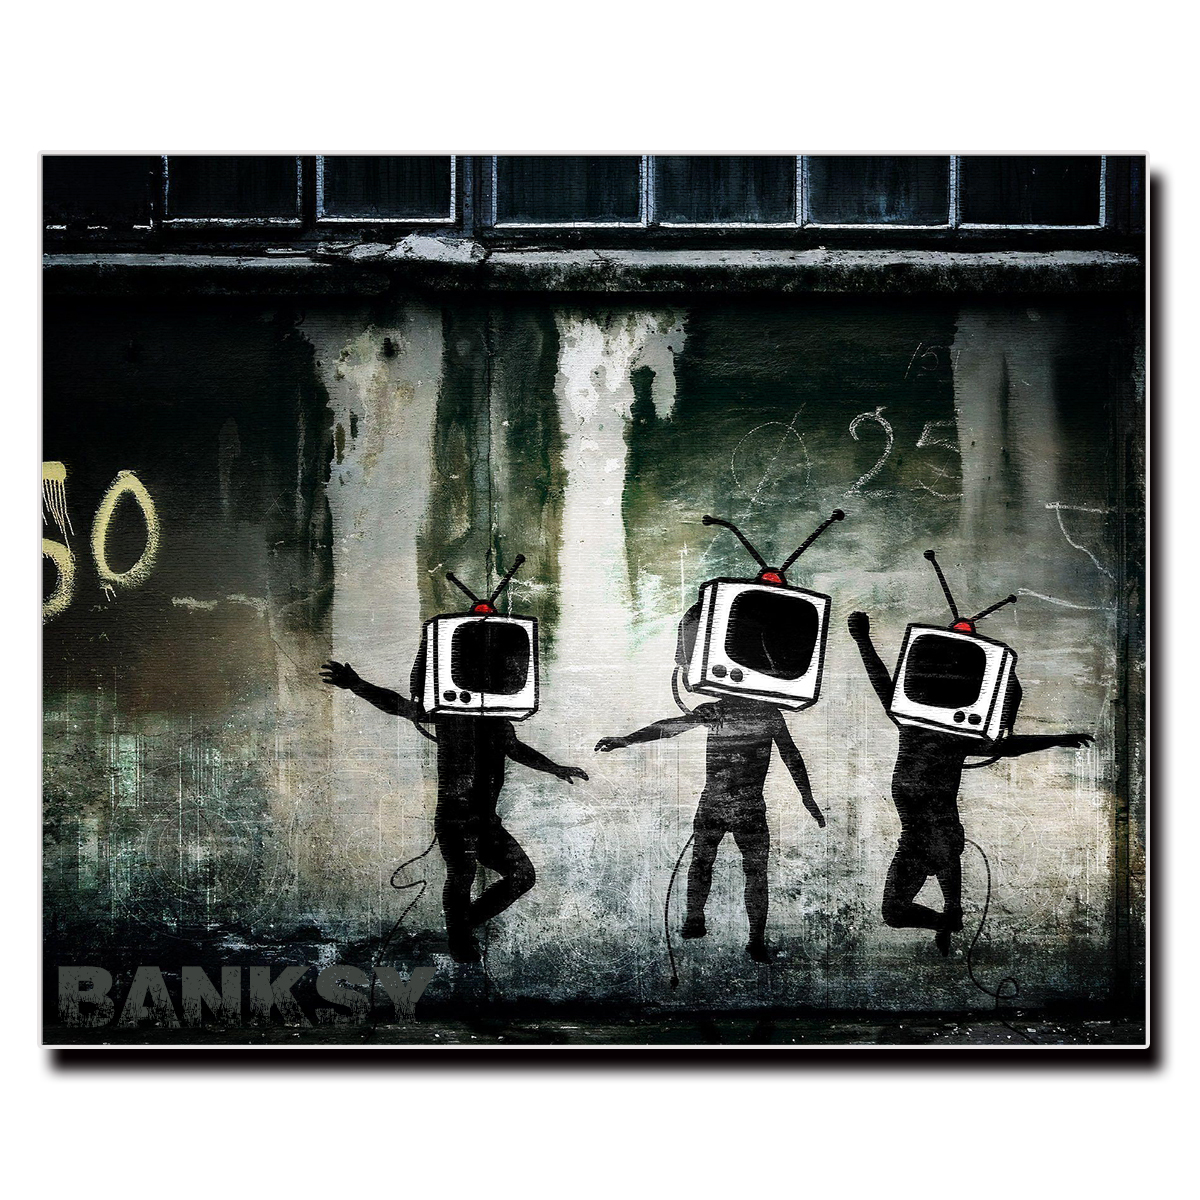 アート キャンバス 18×14 27×22 41×32cm Banksy ウォール バンクシー パネル ファブリック モダン 油絵 絵画 長方形 雑貨  風景画 出産祝い パネル